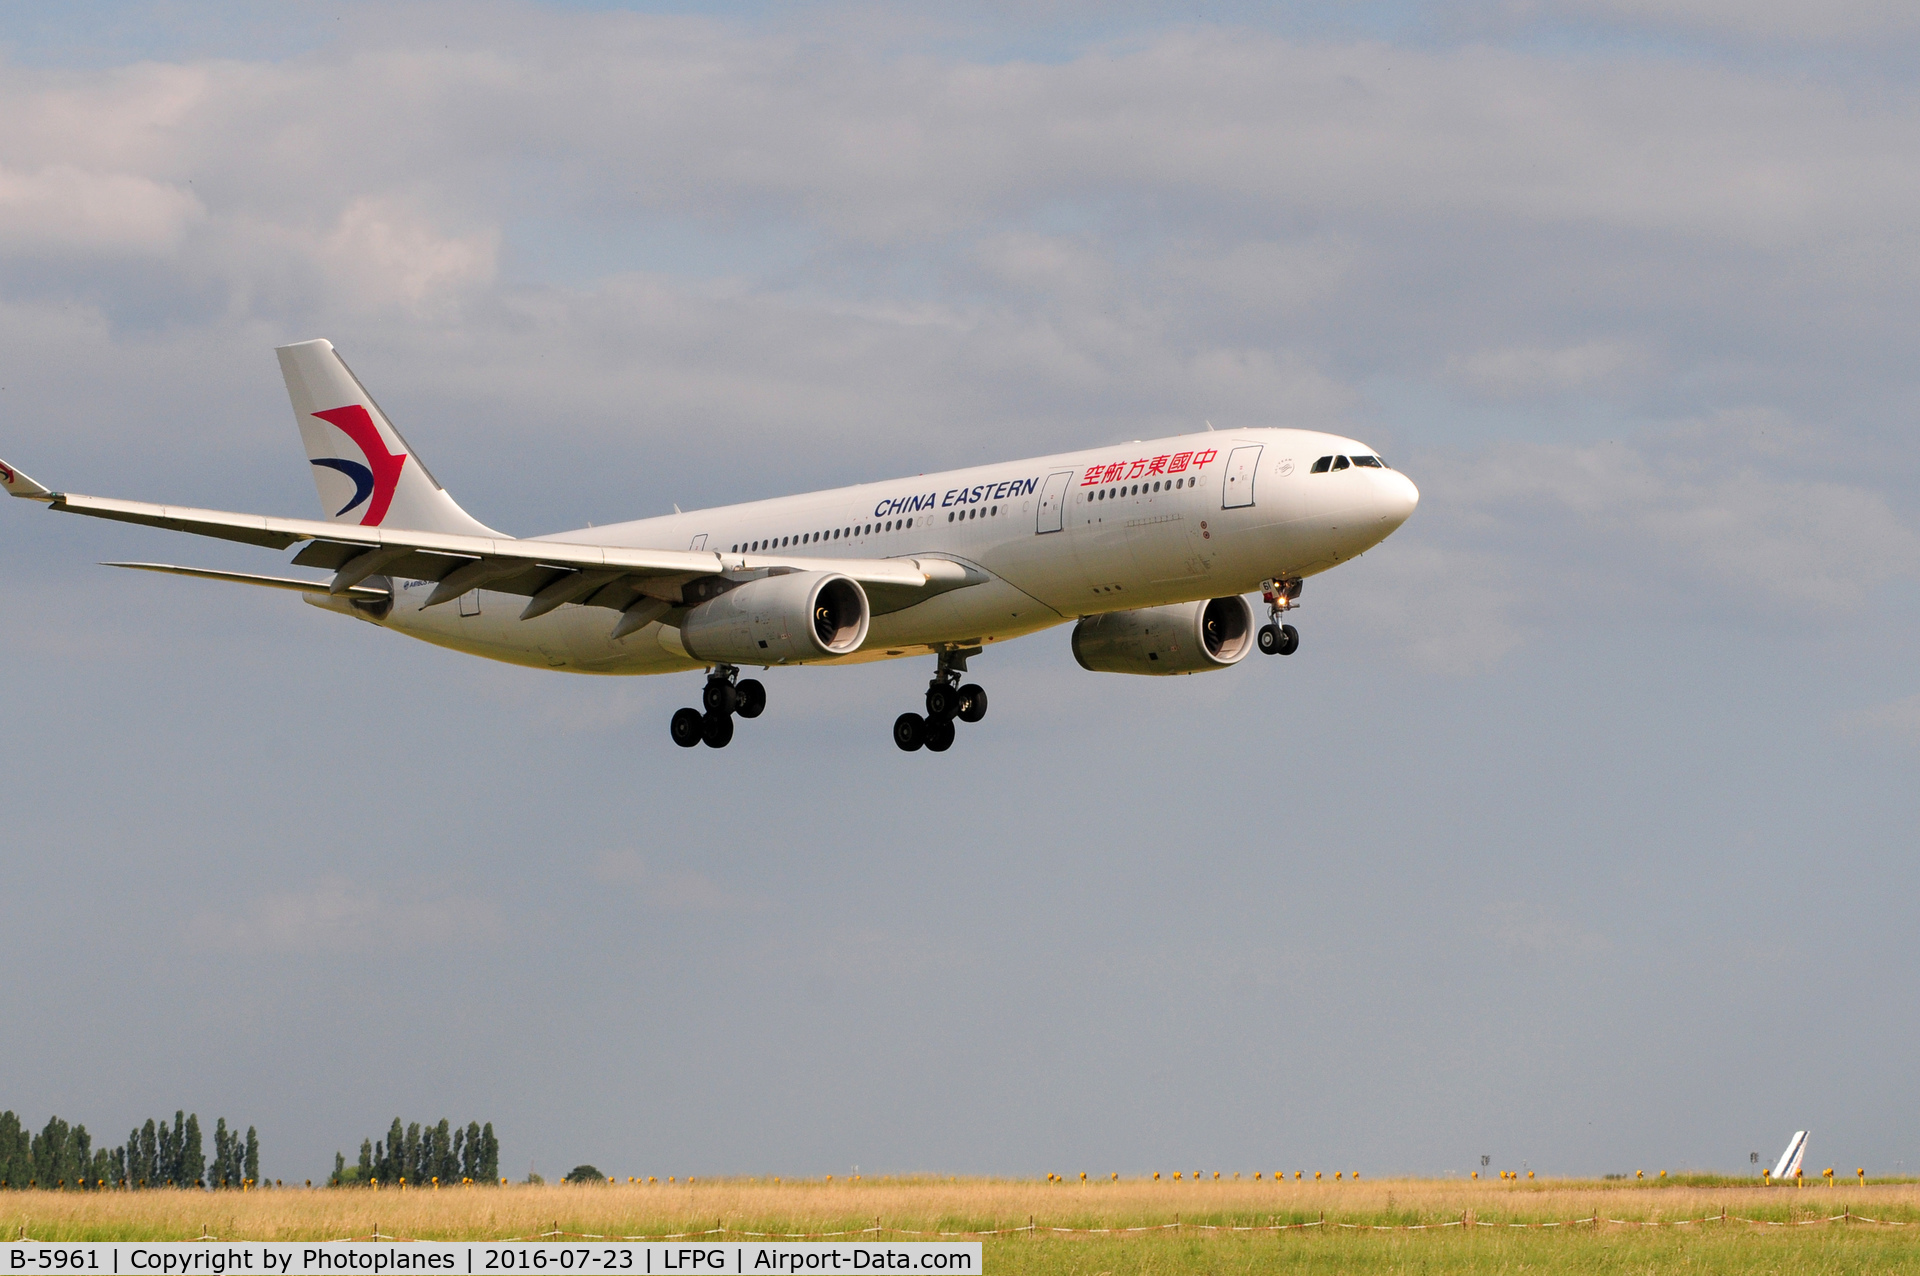 B-5961, 2014 Airbus A330-243 C/N 1569, cdg landing